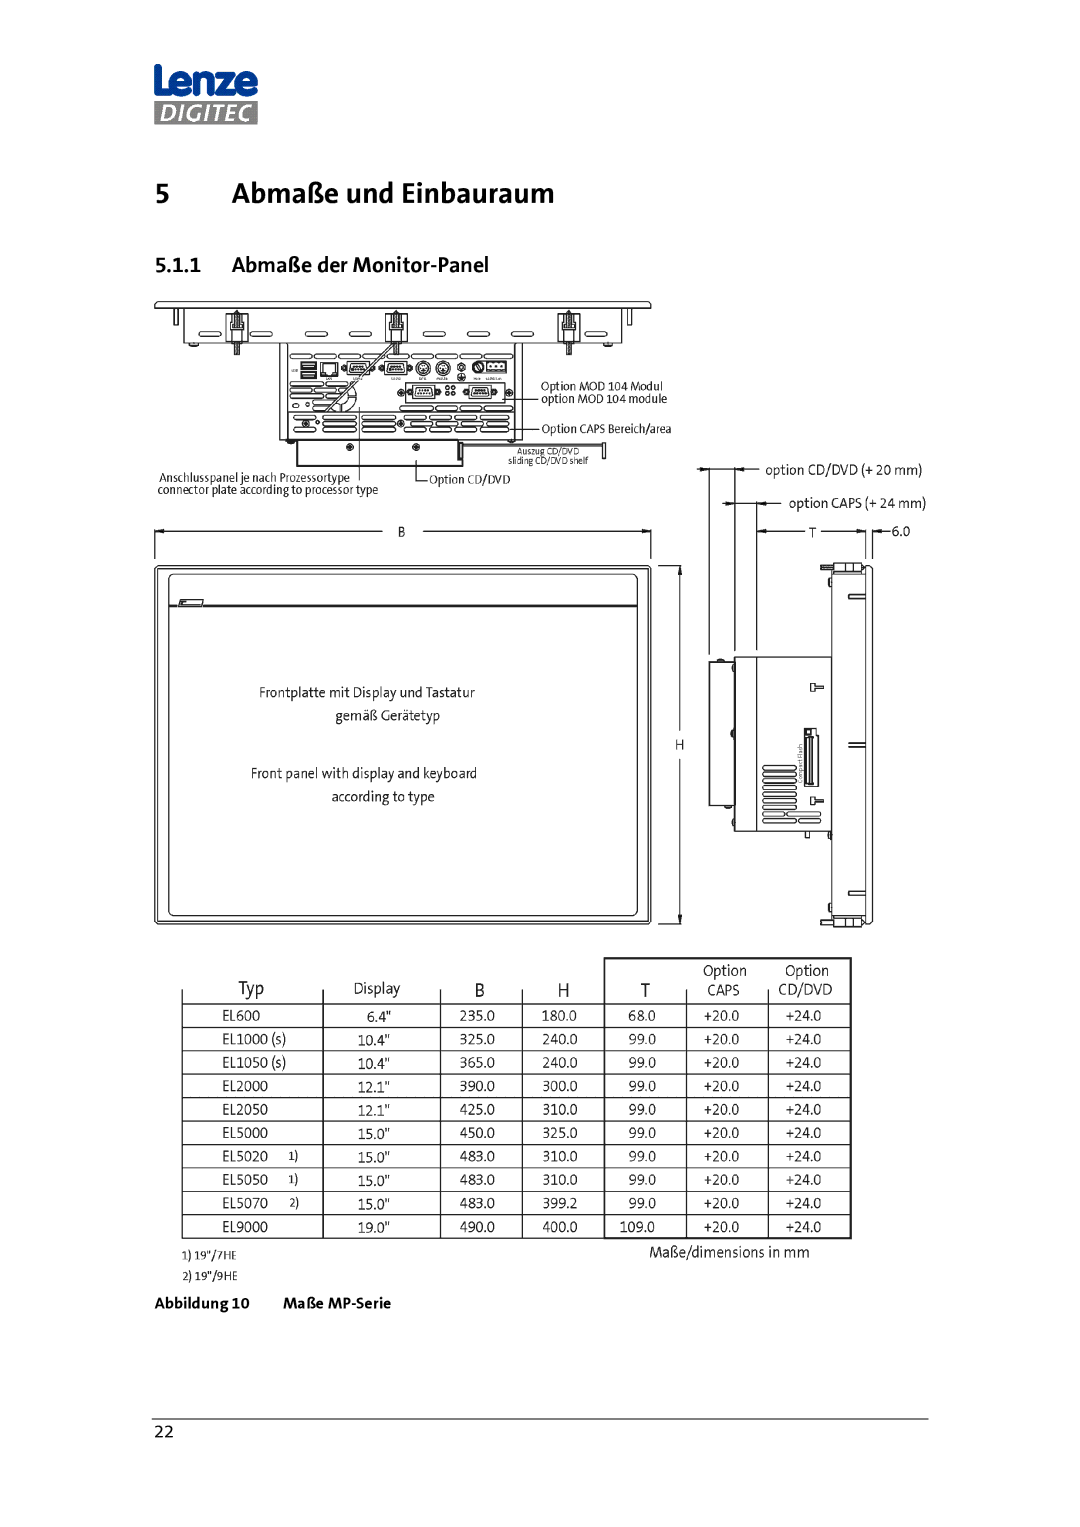 DigiTech MP 600-9000 DVI manual Abmaße und Einbauraum, Abmaße der Monitor-Panel 